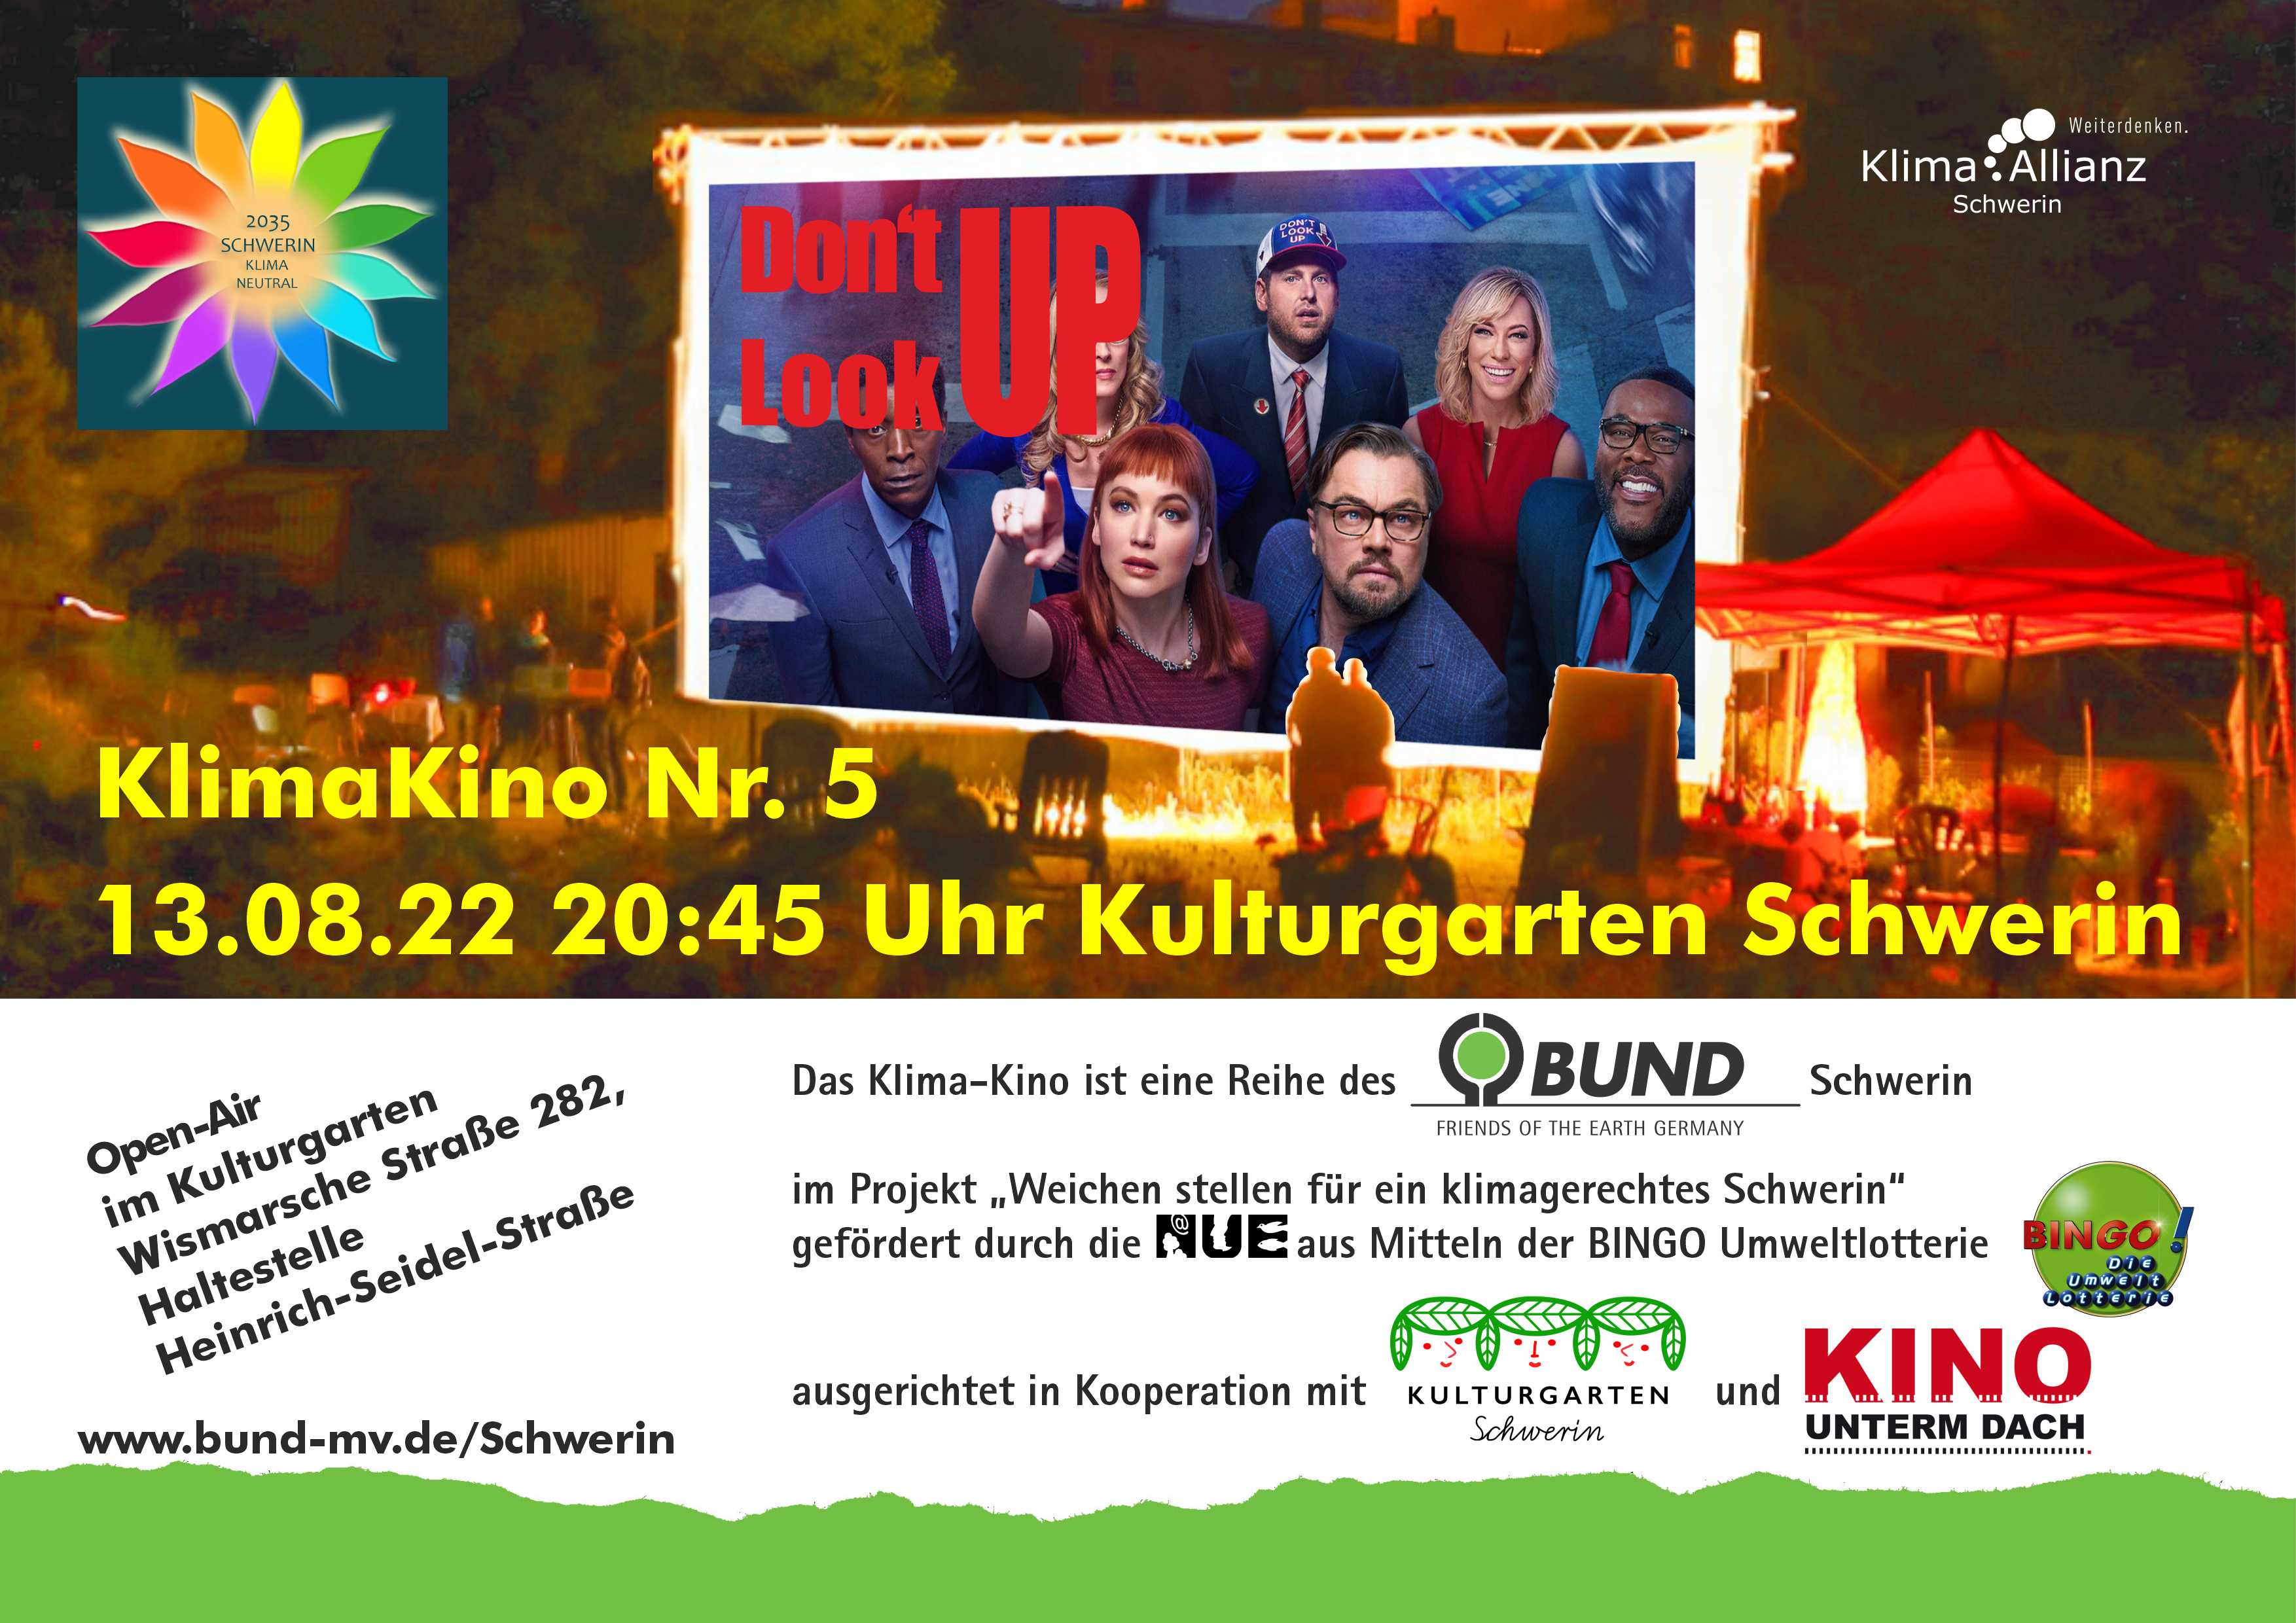 KlimaKino Nr. 5 13.08.22 20:45 Uhr Kulturgarten Schwerin © BUND Schwerin